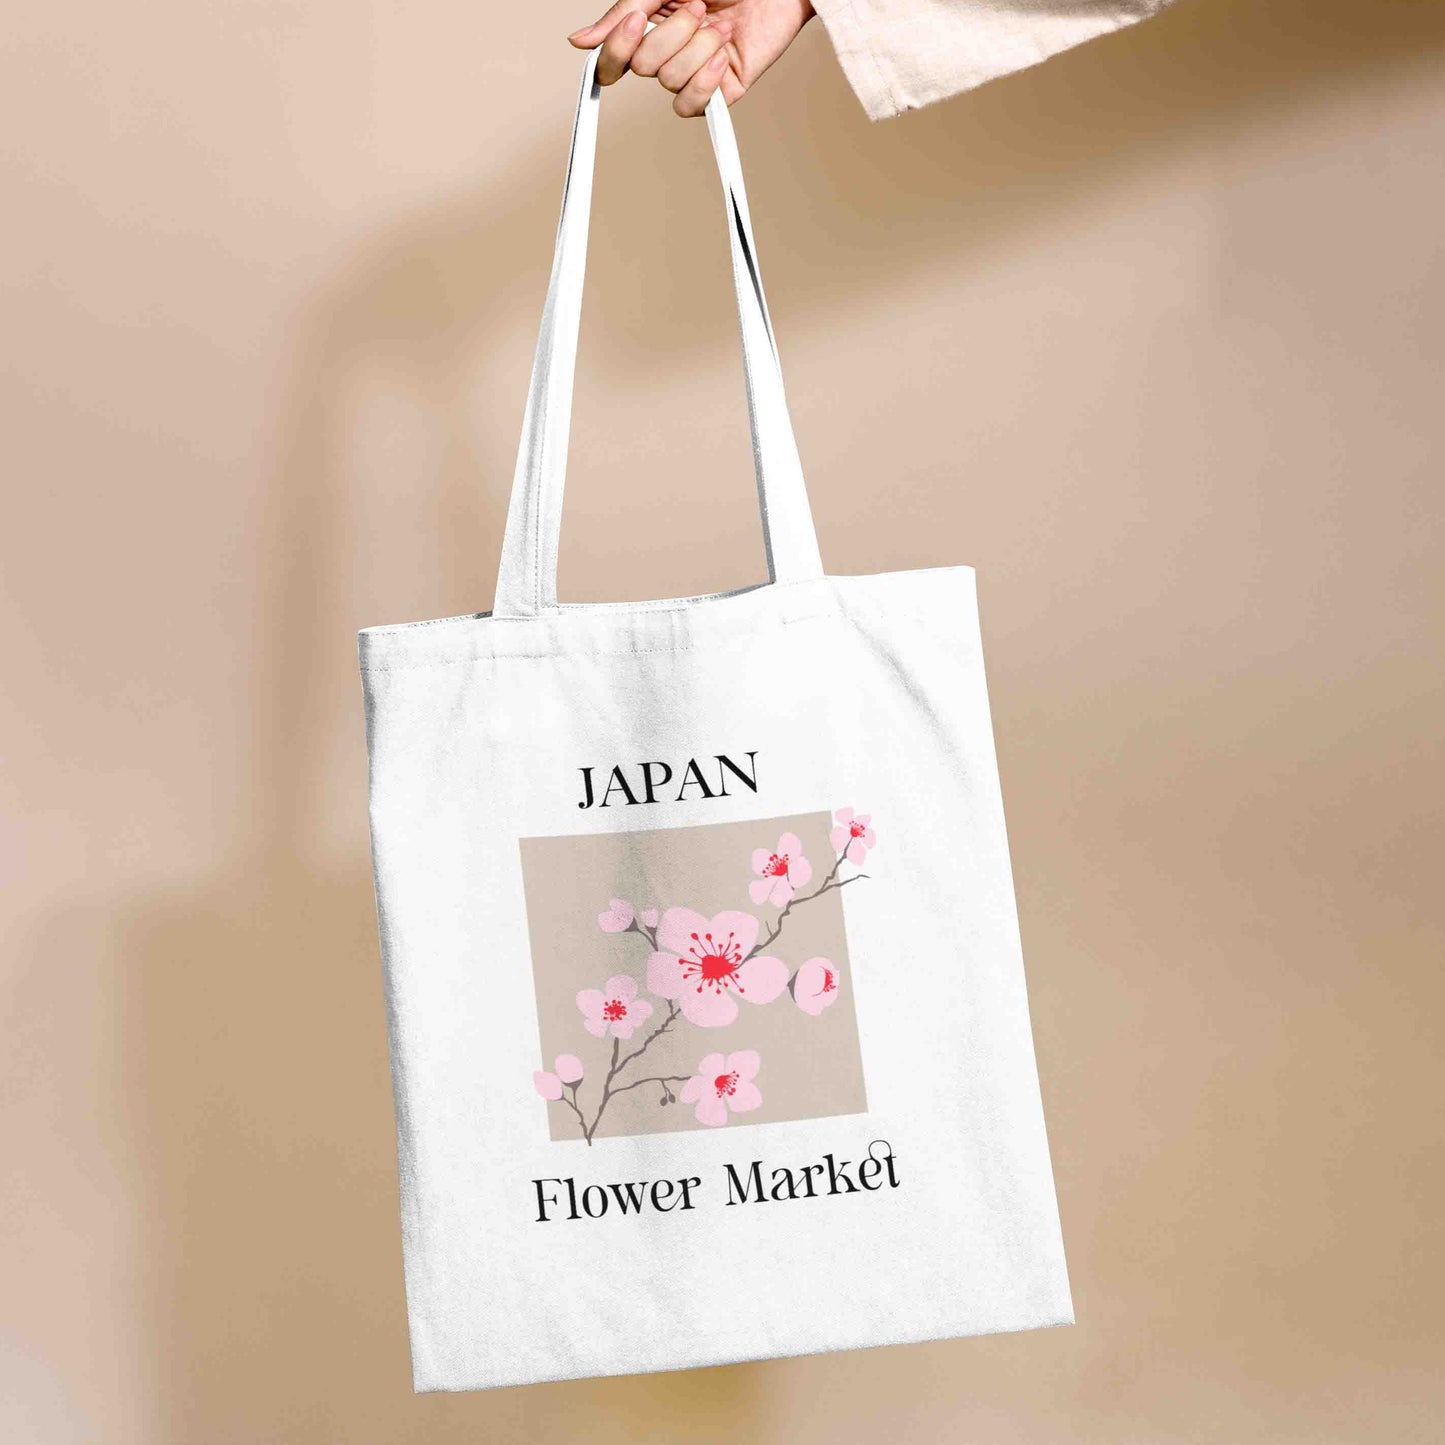 Japan flower market Cotton Tote